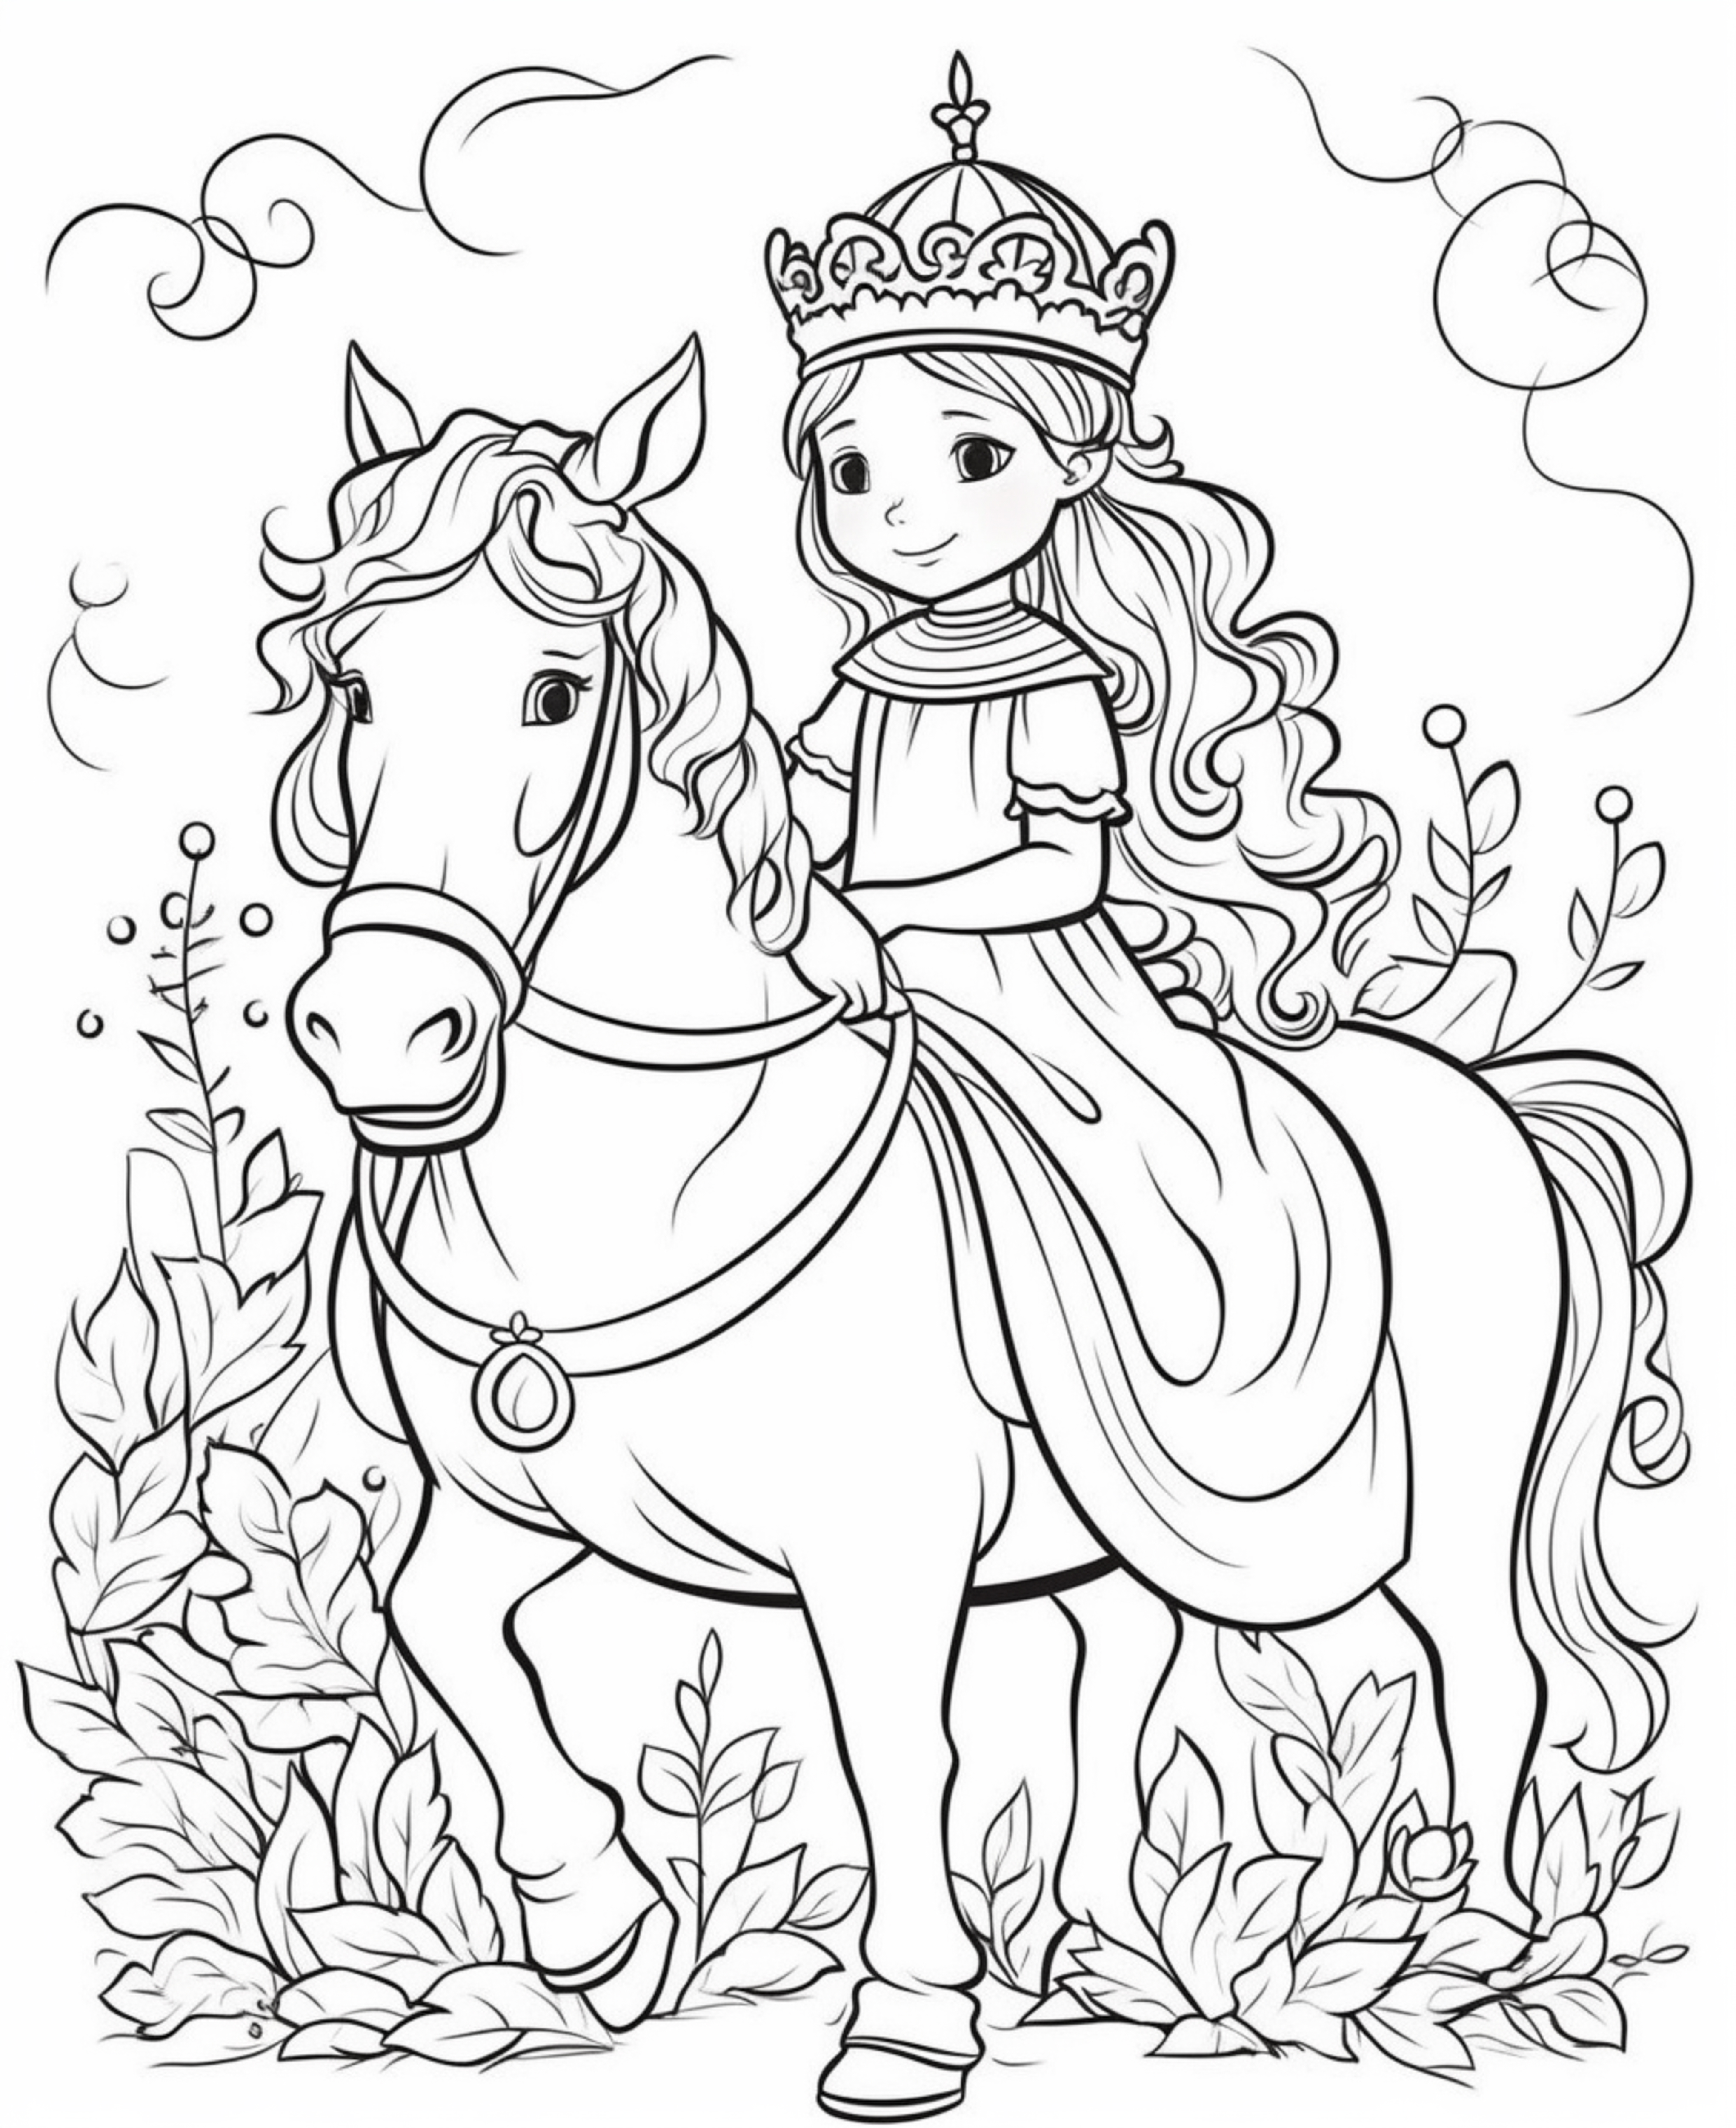 Раскраска принцесса верхом на лошади формата А4 в высоком качестве